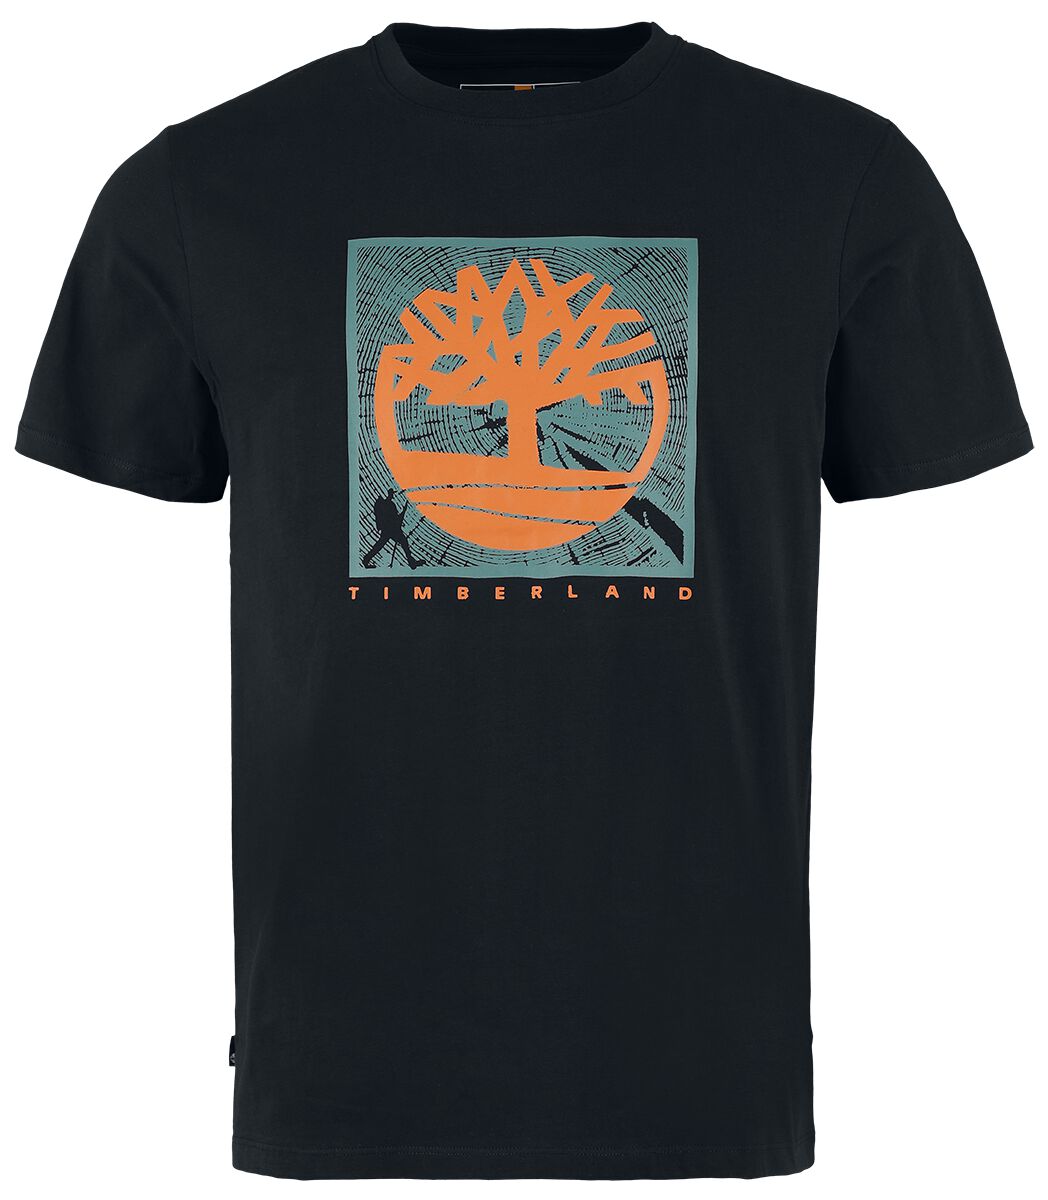 Timberland T-Shirt - Short Sleeve Front Graphic Tee - S bis XXL - für Männer - Größe XXL - schwarz